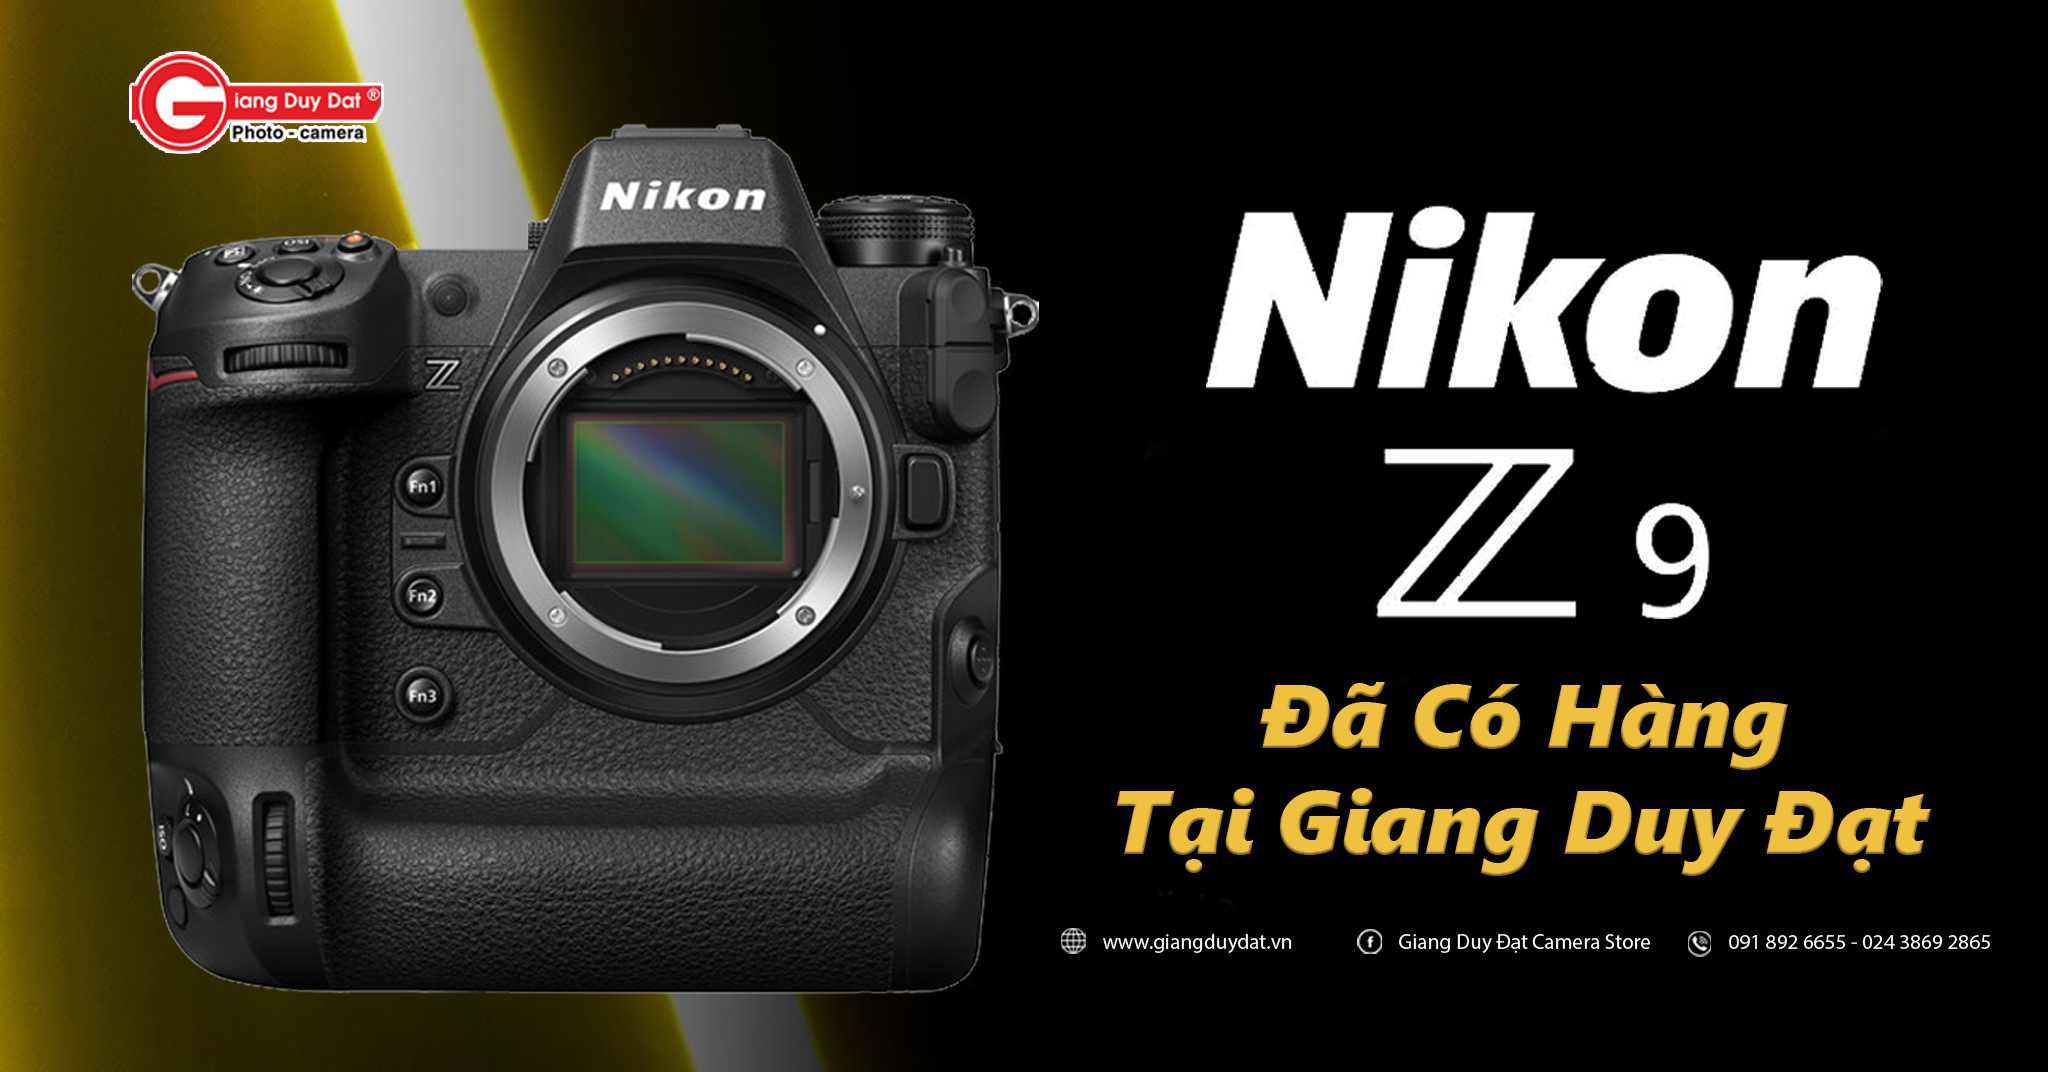 Nikon Z9 Đã Có Hàng